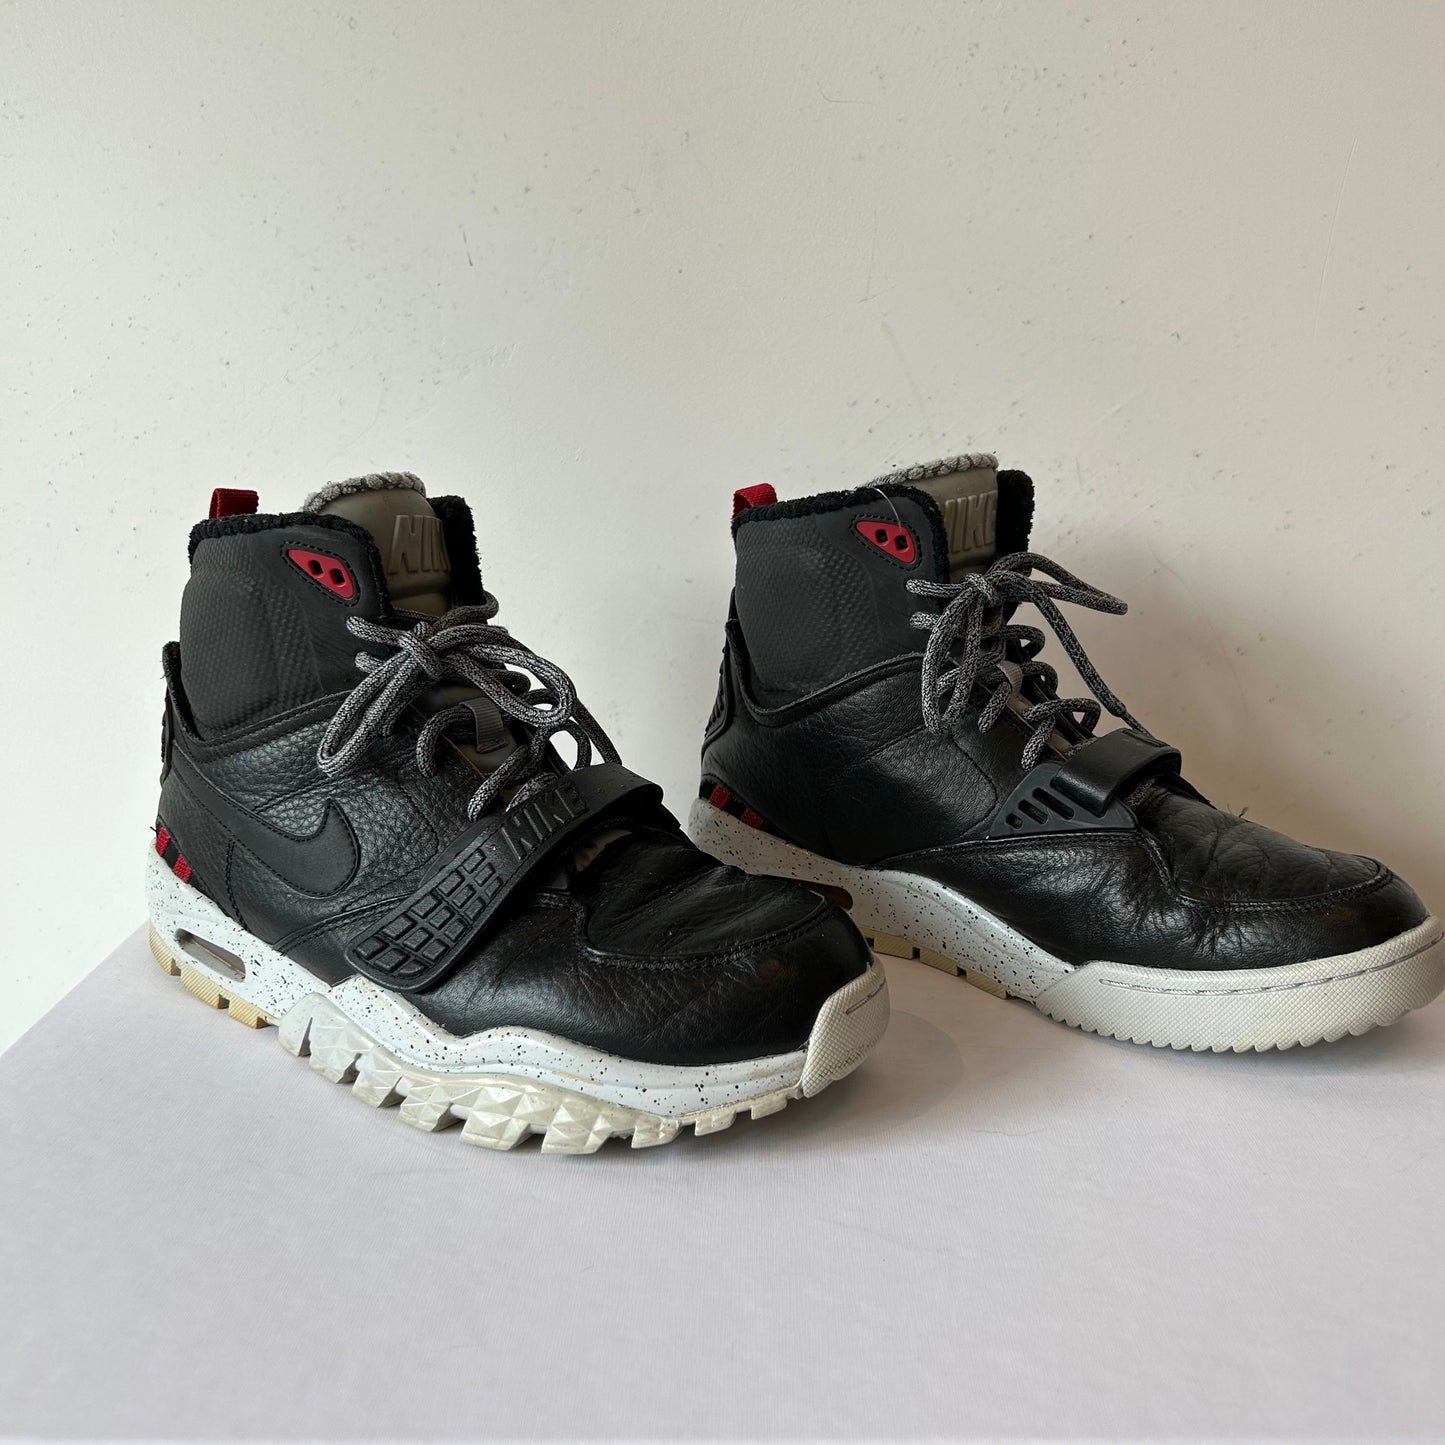 9 Nike Men's Boots Black-Gray